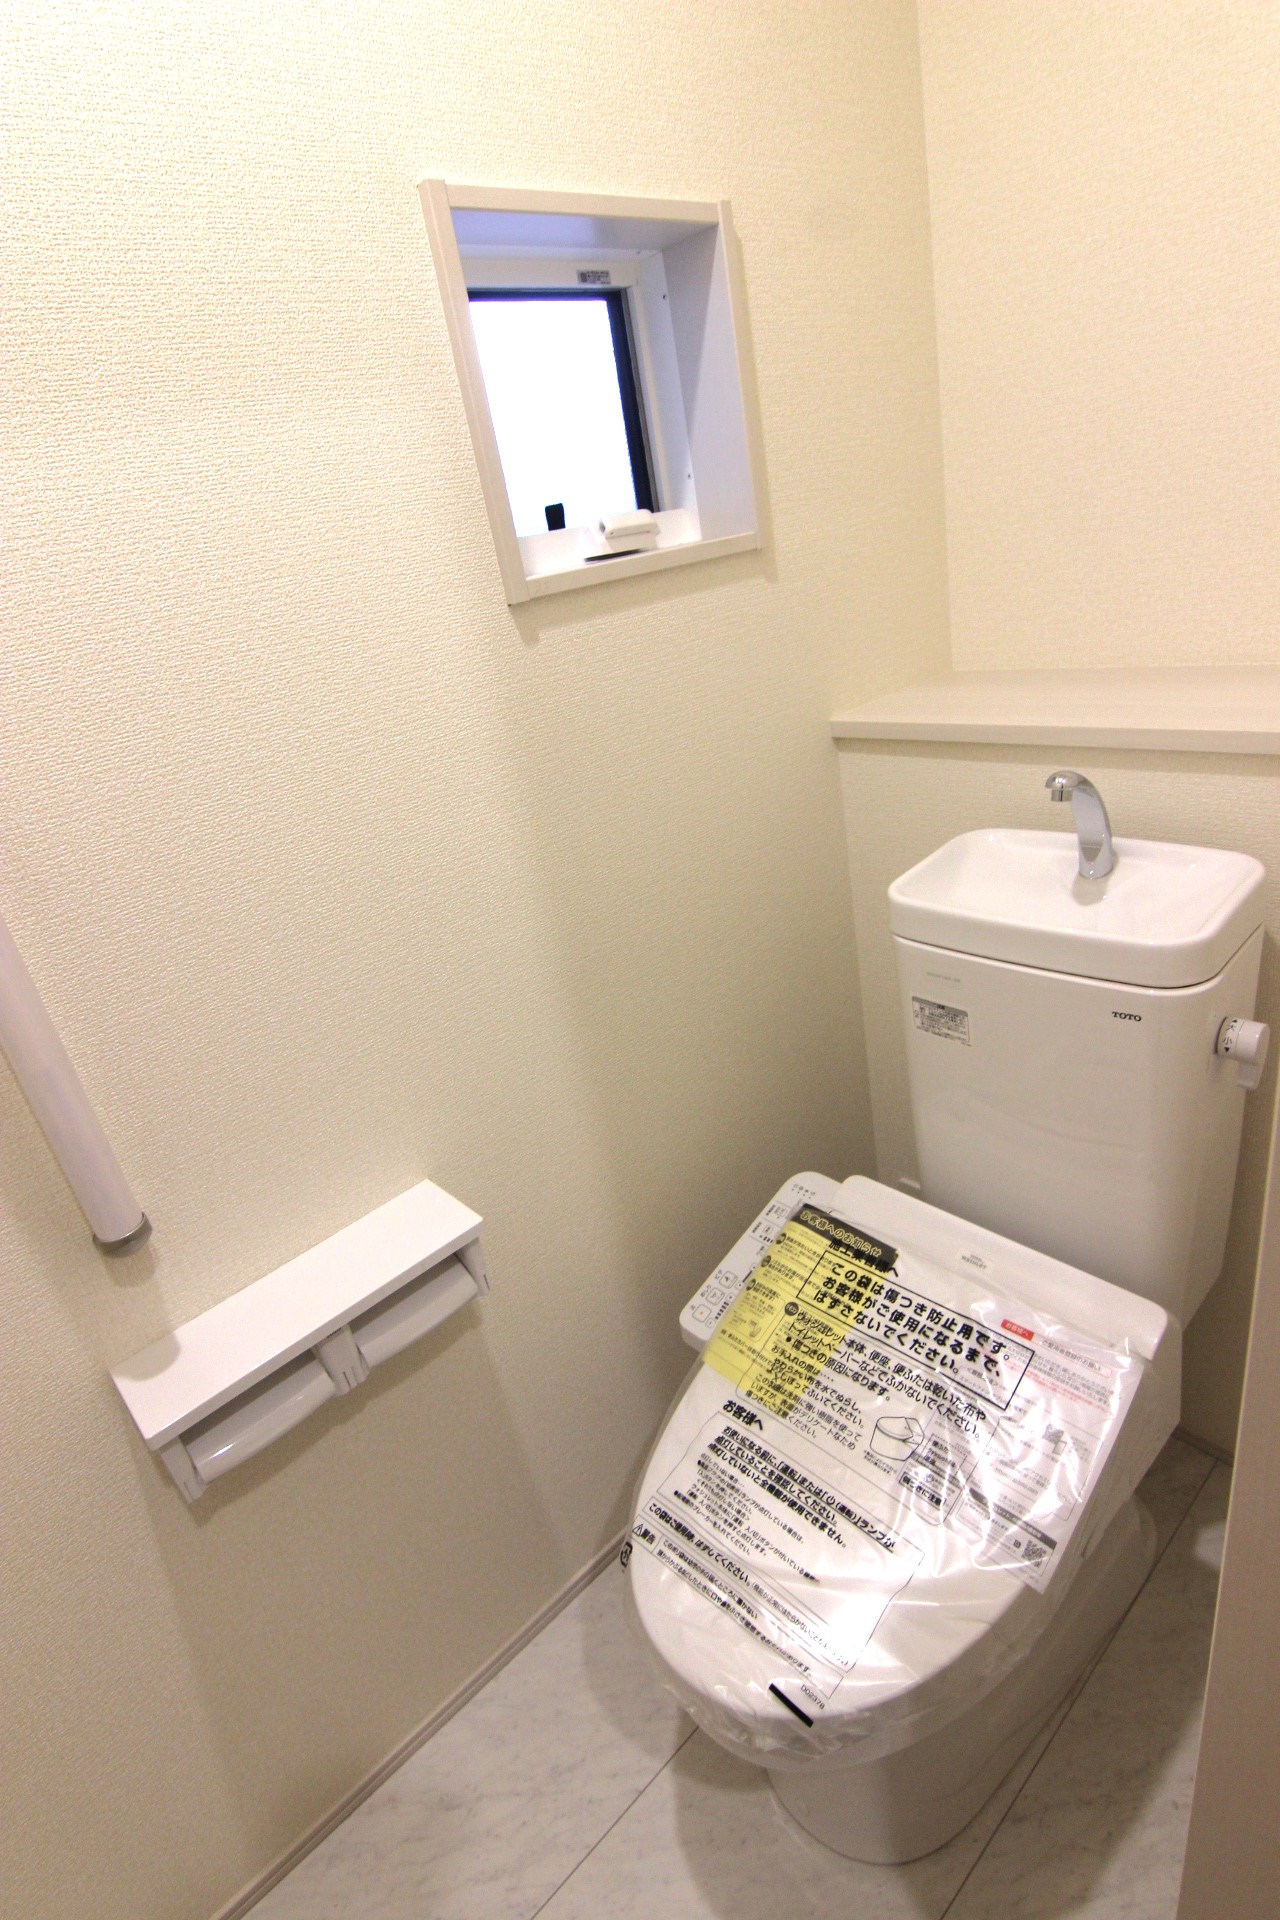 【8号棟:1階トイレ】　多機能ウォシュレット・手摺り・壁面収納付き・背面には小物が置けるカウンターも付いています。※トイレの仕様は全棟共通です